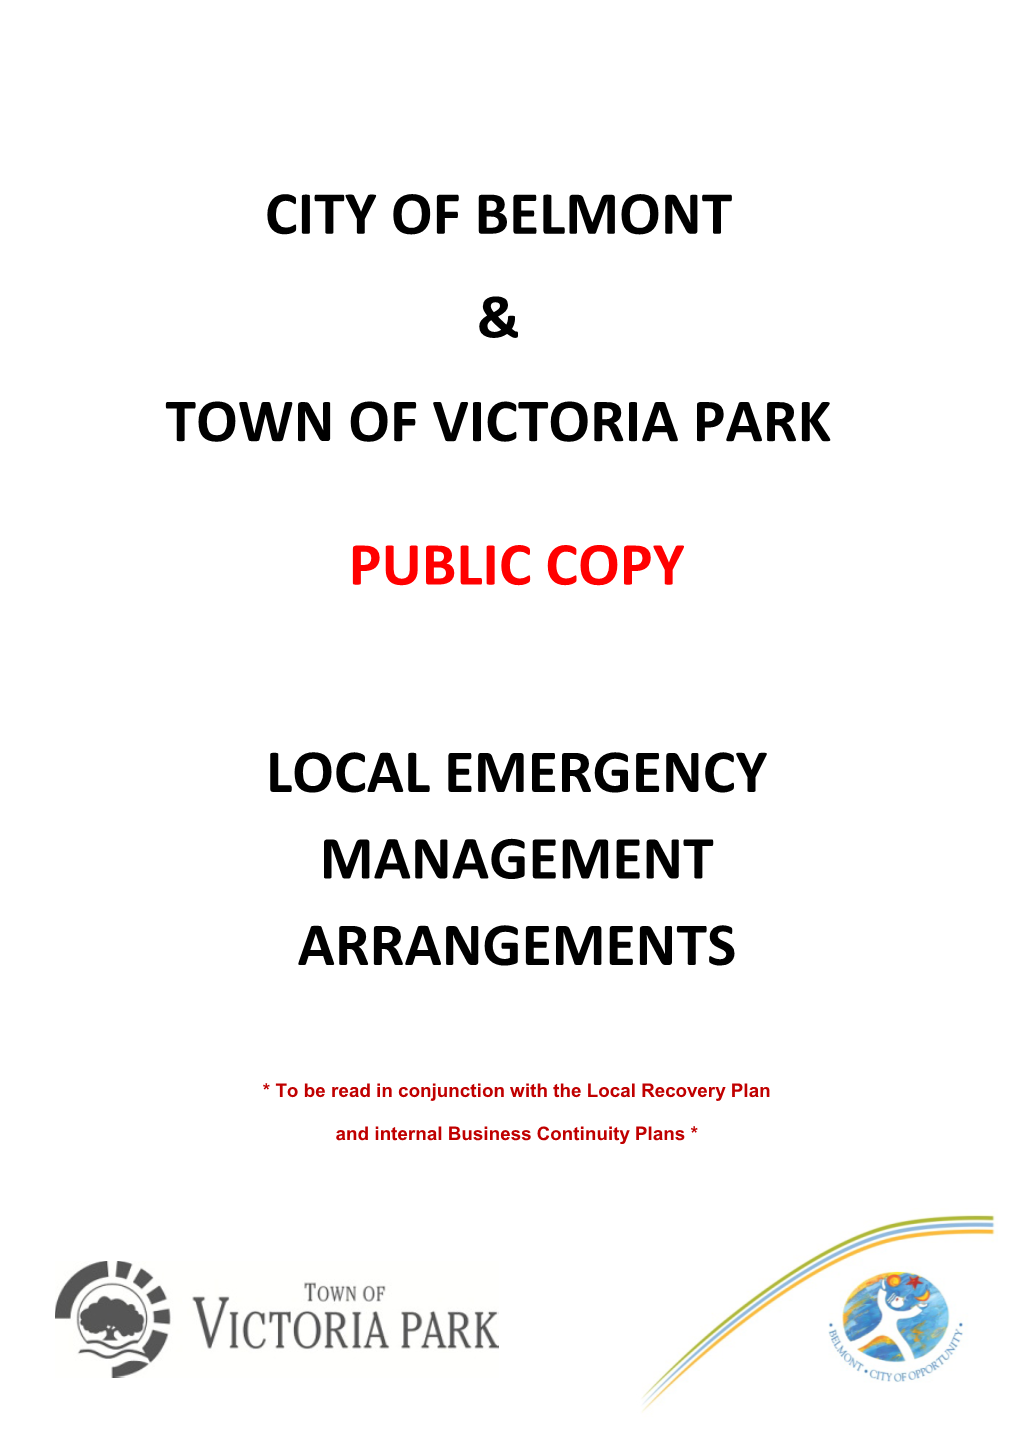 City of Belmont & Town of Victoria Park Public Copy